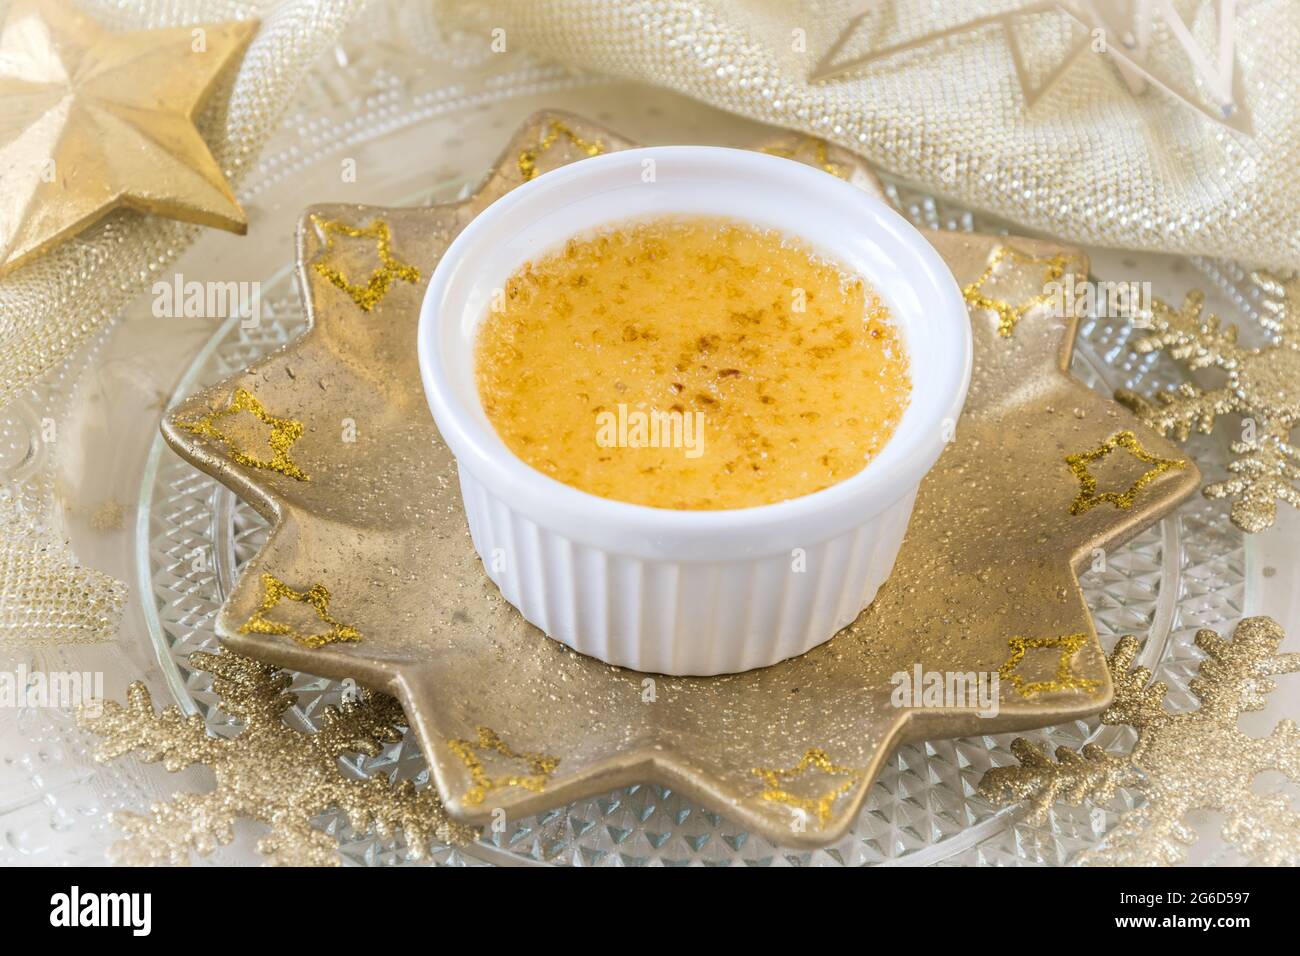 Crème brûlée - dessert traditionnel à la crème vanille française avec sucre caramélisé sur une assiette en forme d'étoile dorée et décoration de noël dorée Banque D'Images